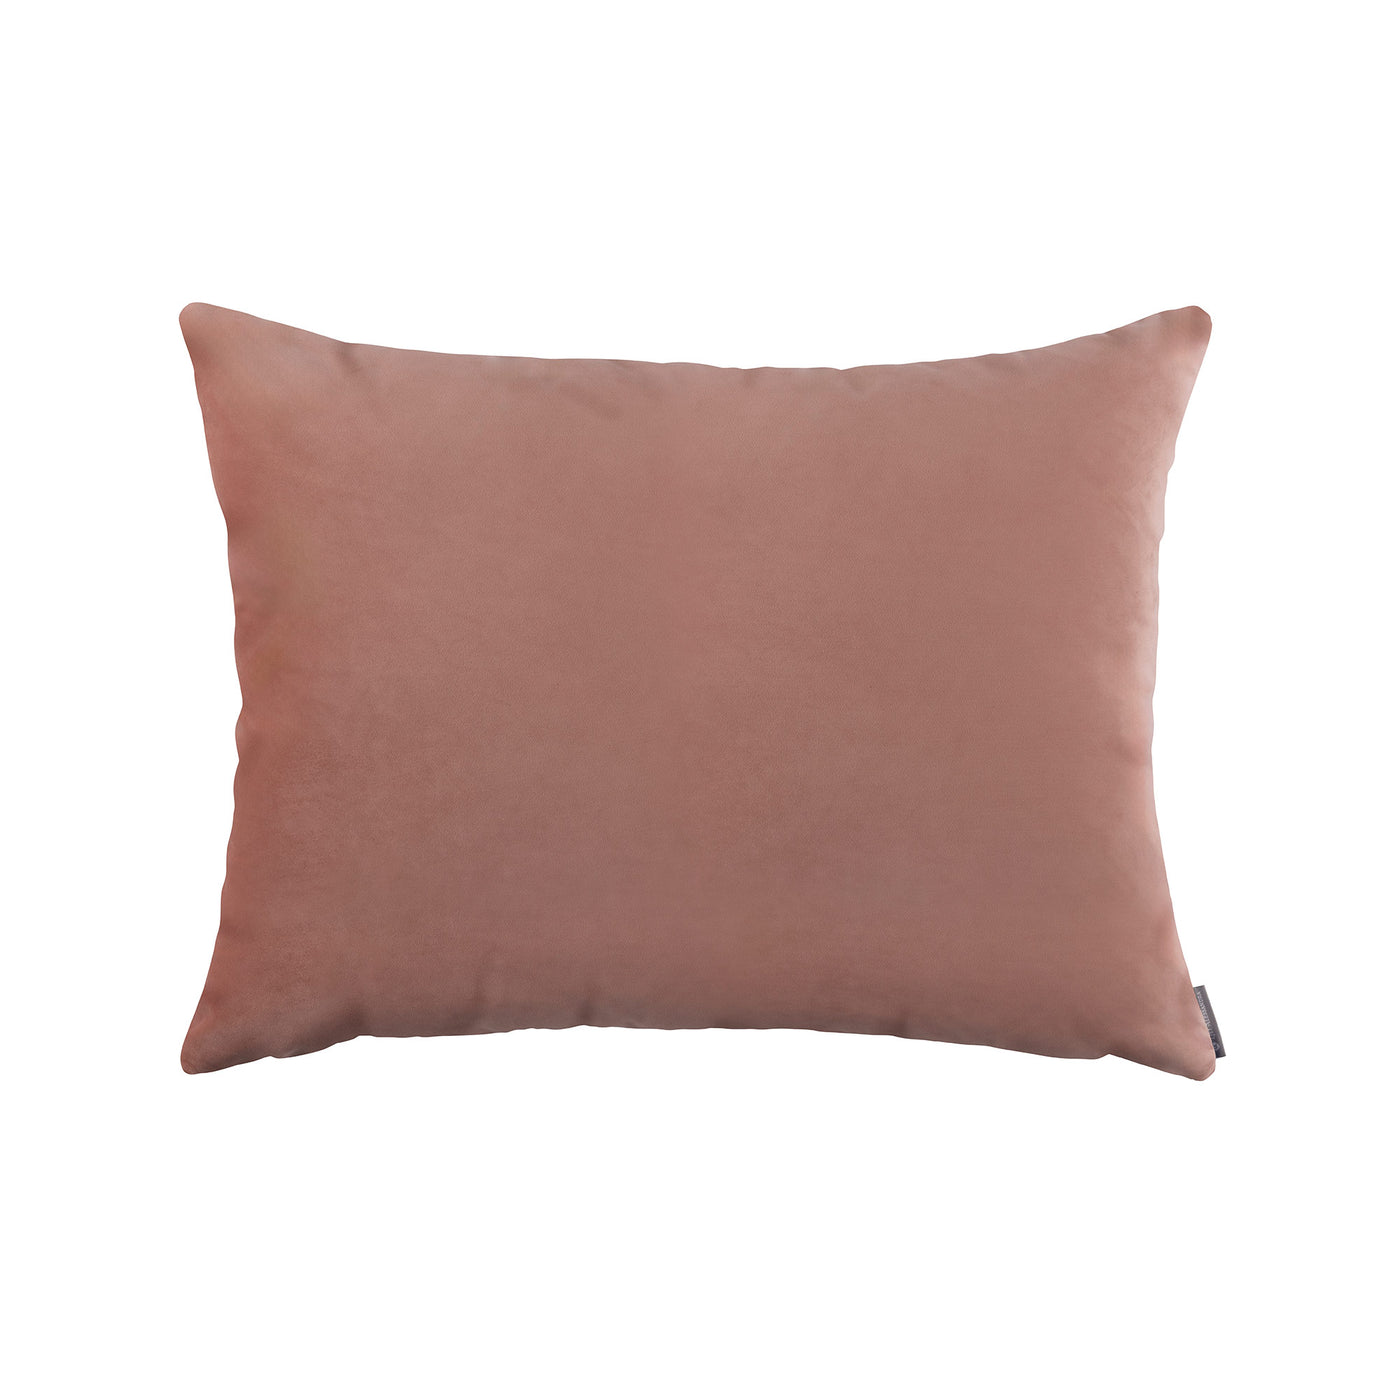 Vivid Shell Luxe Euro Pillow (27x36)